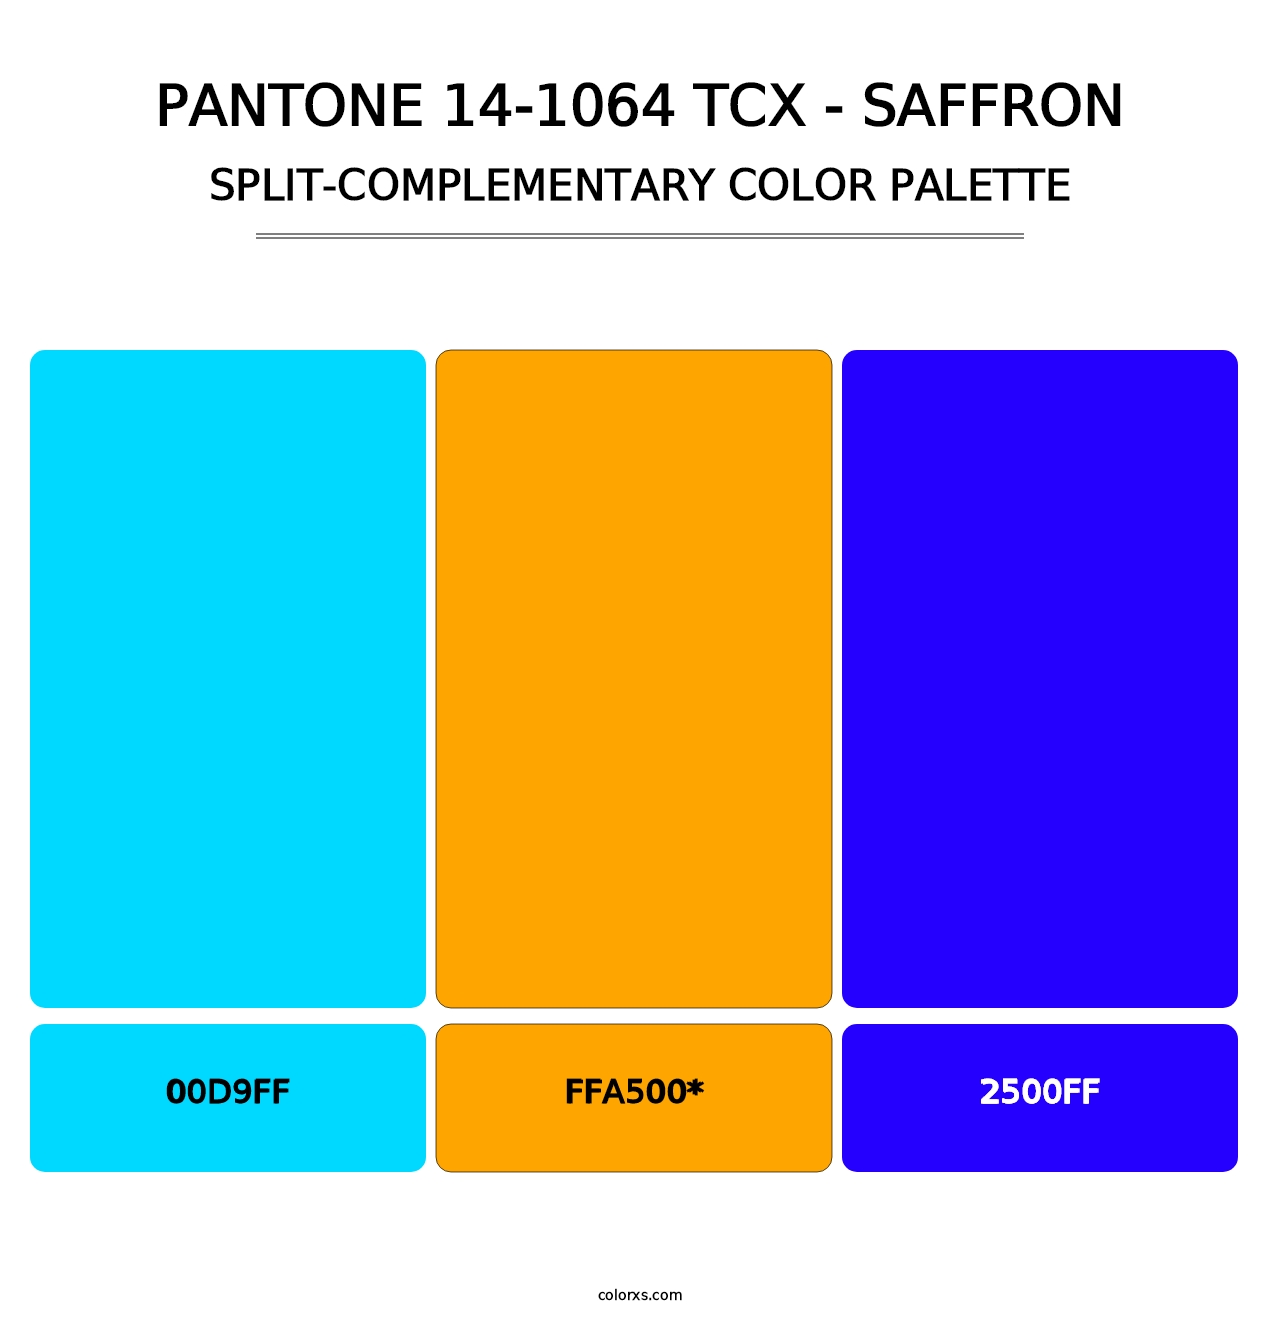 PANTONE 14-1064 TCX - Saffron - Split-Complementary Color Palette